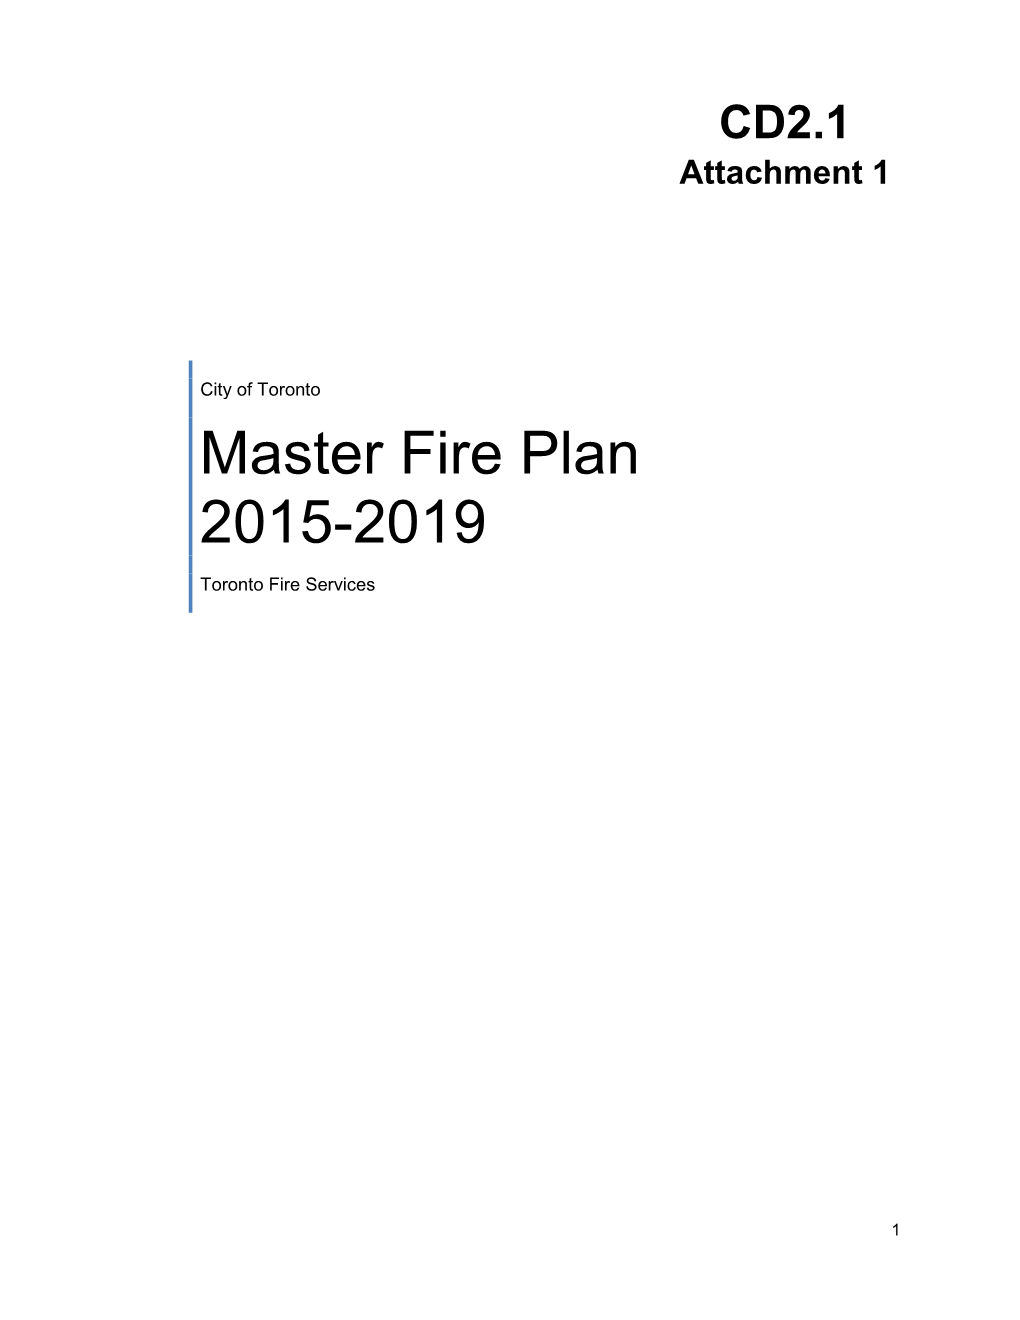 Plan 2015-2019 Master Fire Plan